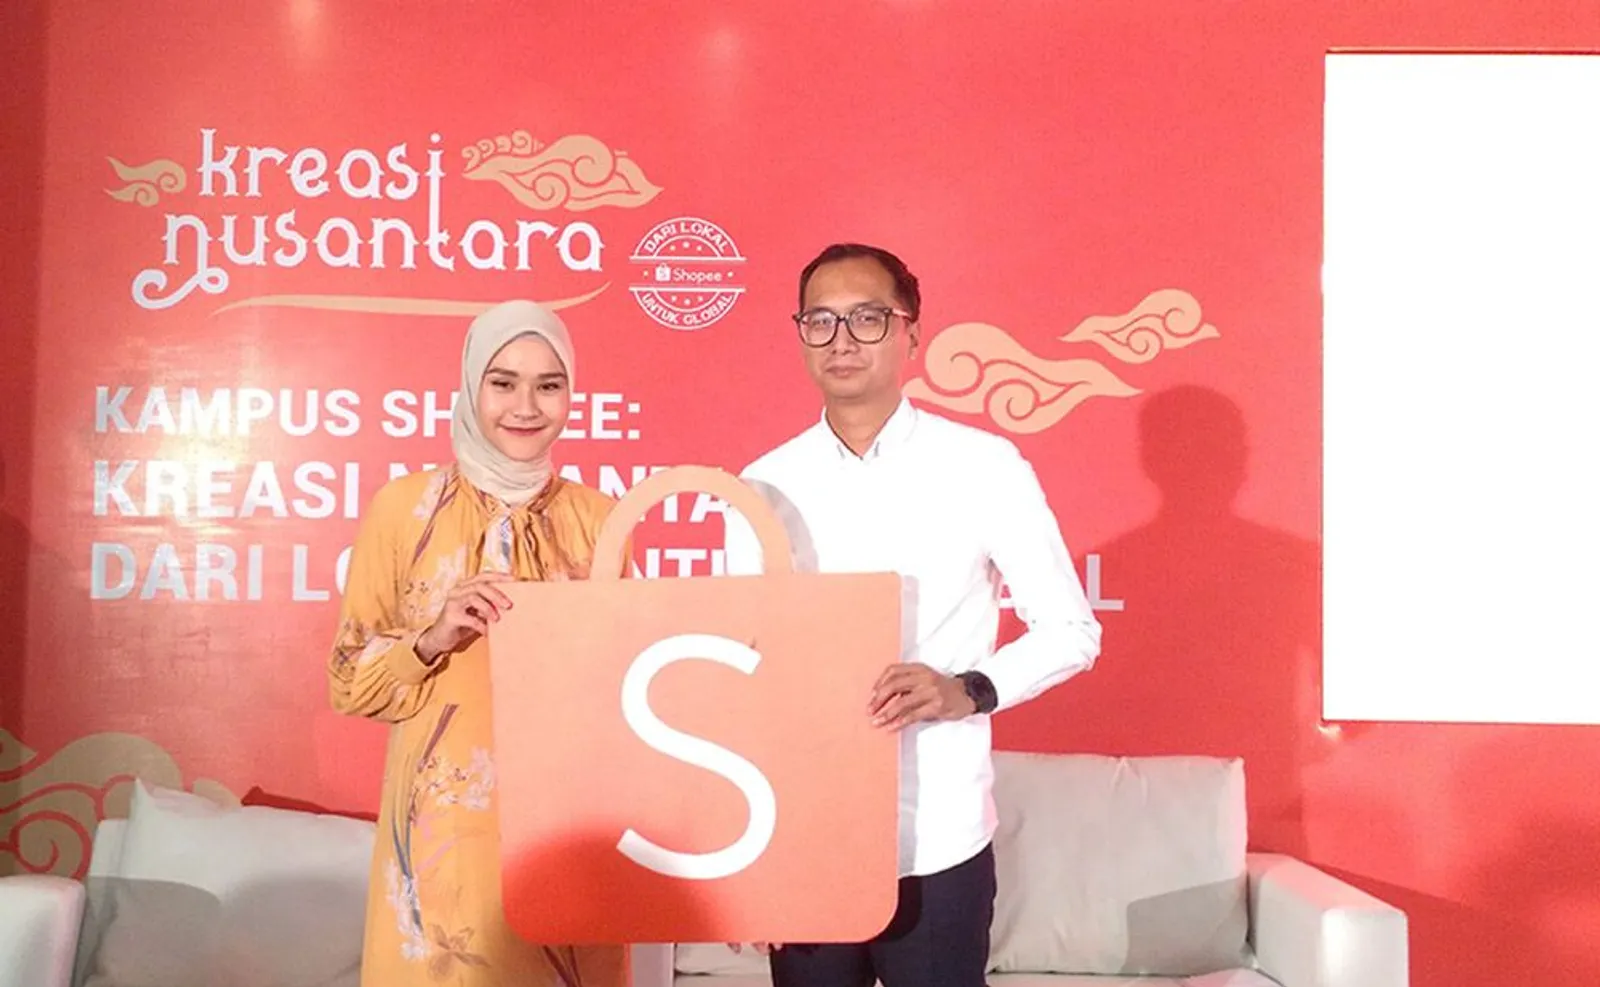 Bersama Karya Asli Indonesia, Shopee Siap Tembus Pasar Global